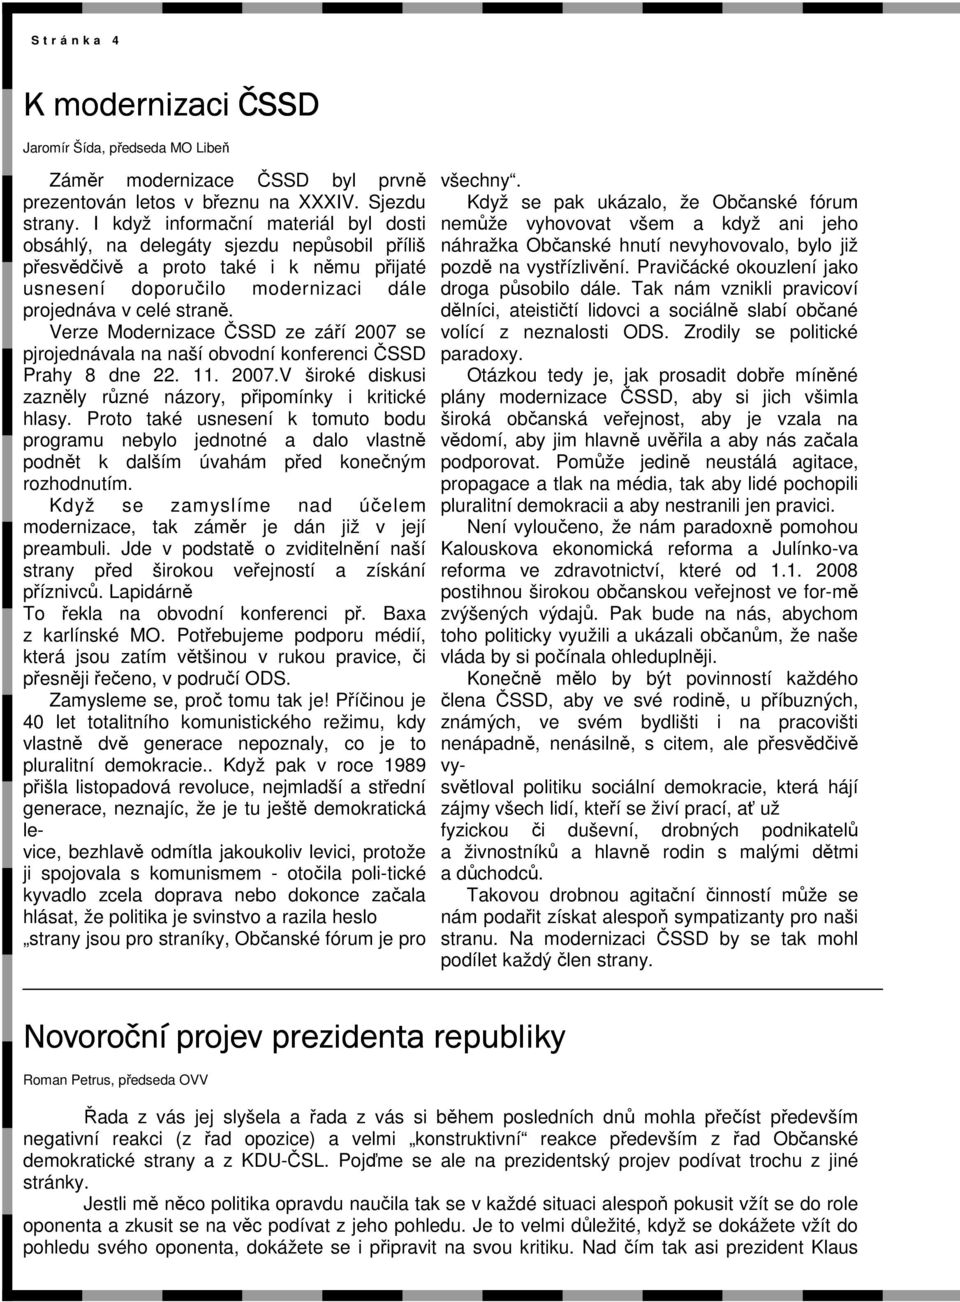 Verze Modernizace ČSSD ze září 2007 se pjrojednávala na naší obvodní konferenci ČSSD Prahy 8 dne 22. 11. 2007.V široké diskusi zazněly různé názory, připomínky i kritické hlasy.